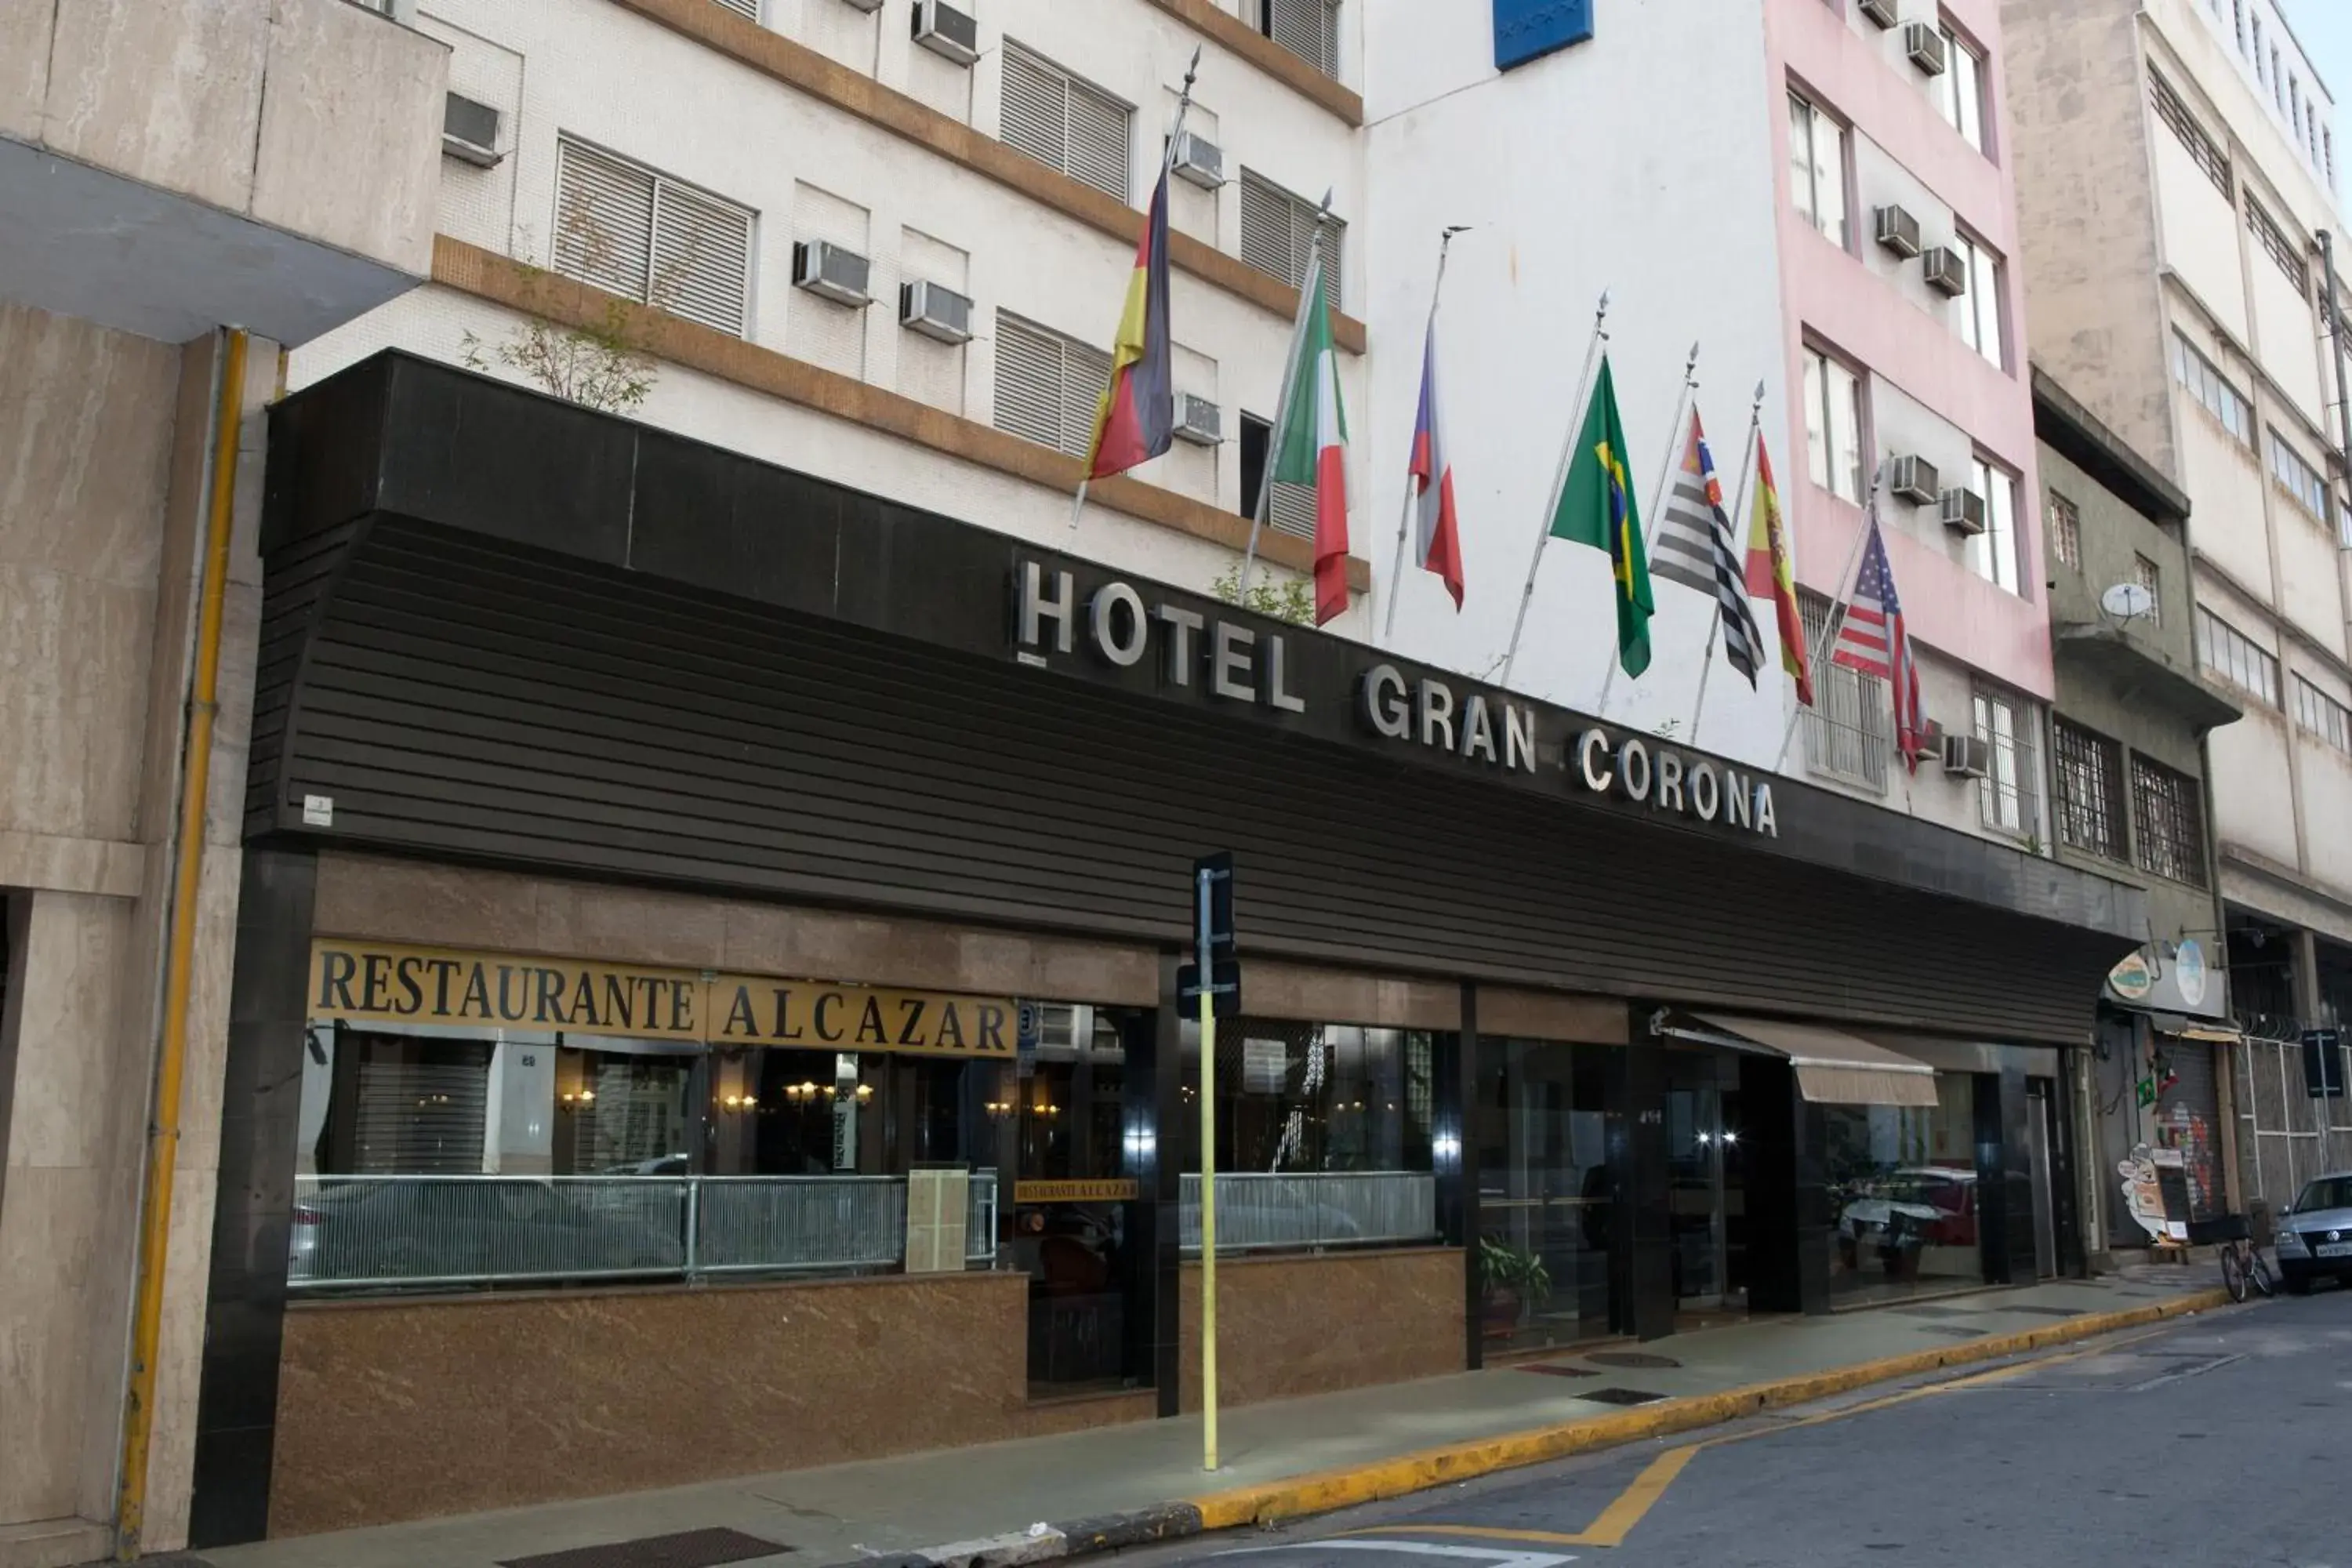 Facade/Entrance in Hotel Gran Corona